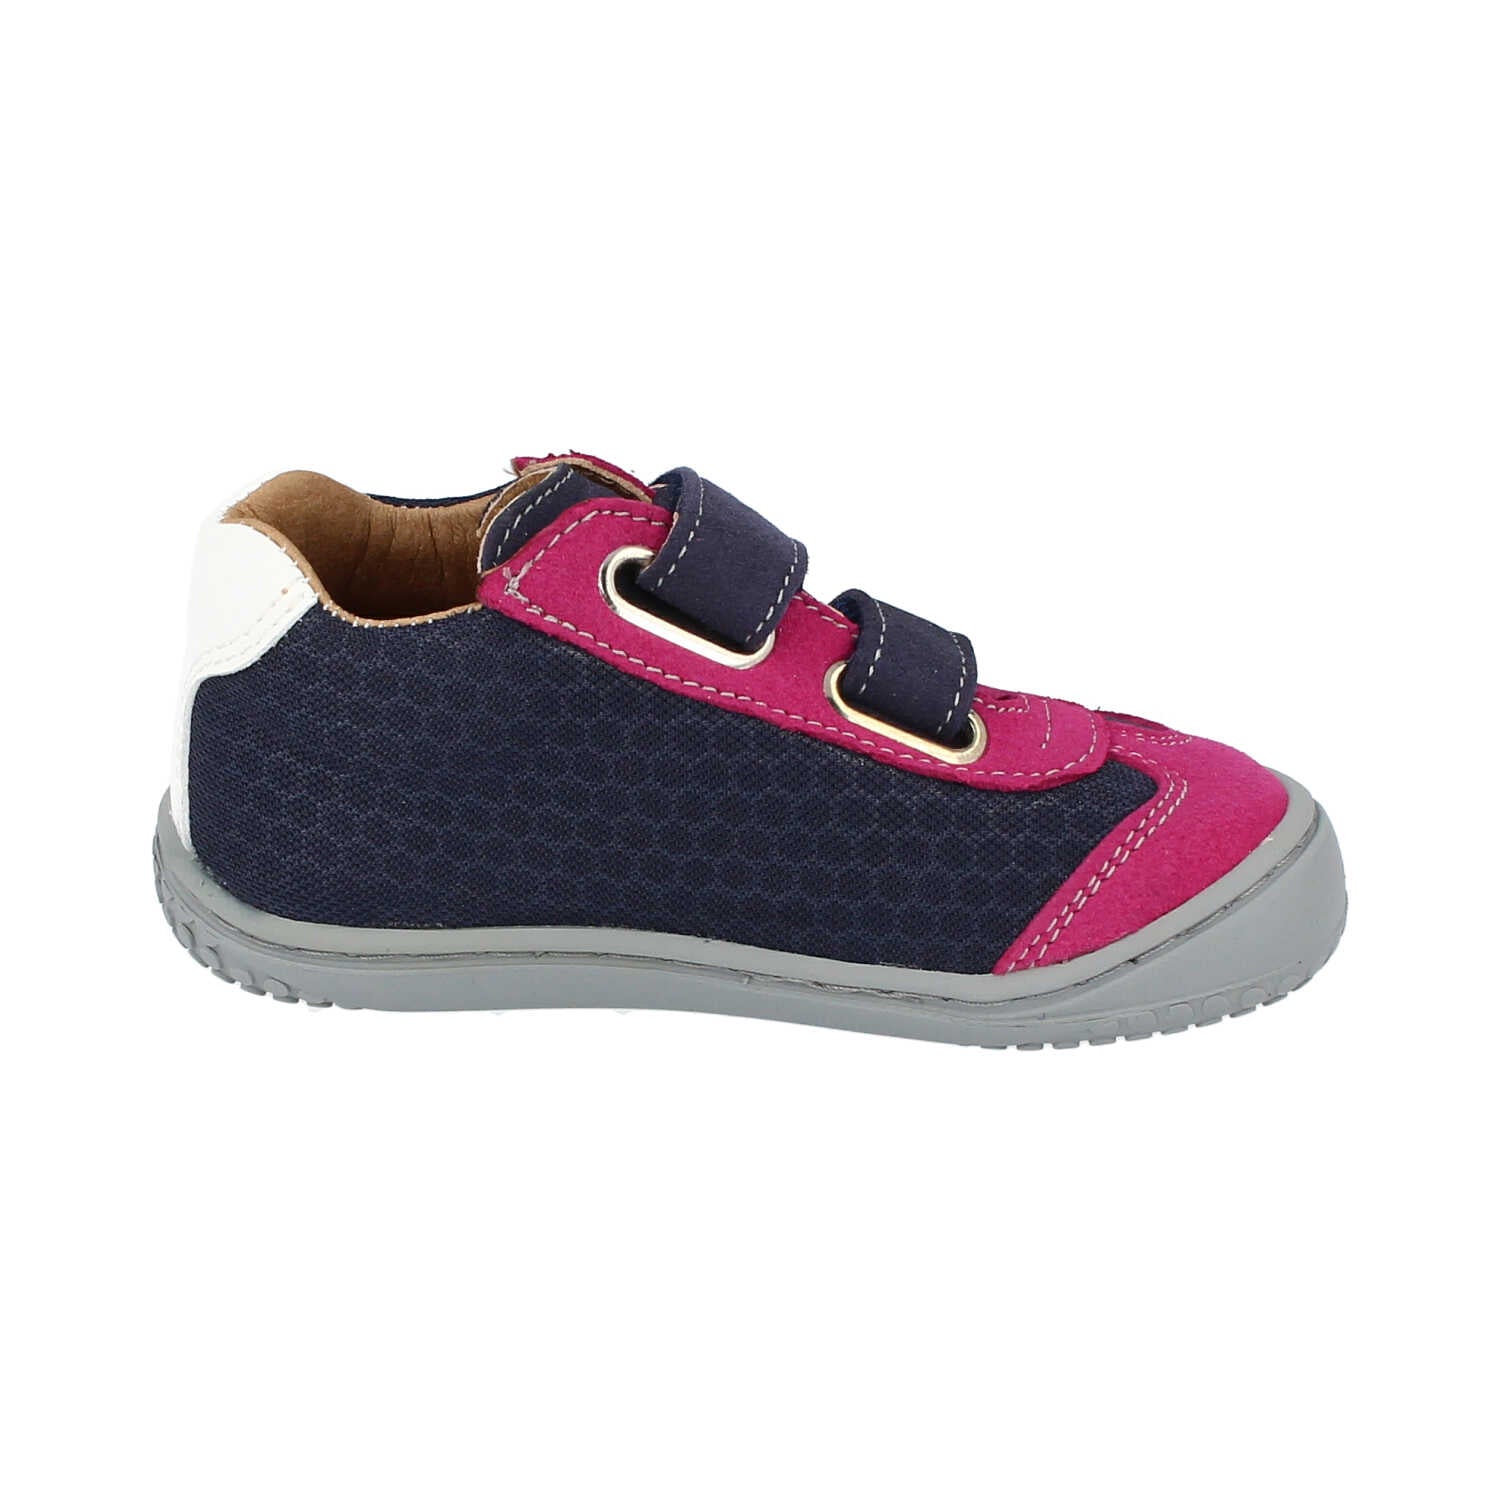 Filii Leguan "Medium" barfods sneakers til børn i farven ocean pink, inderside